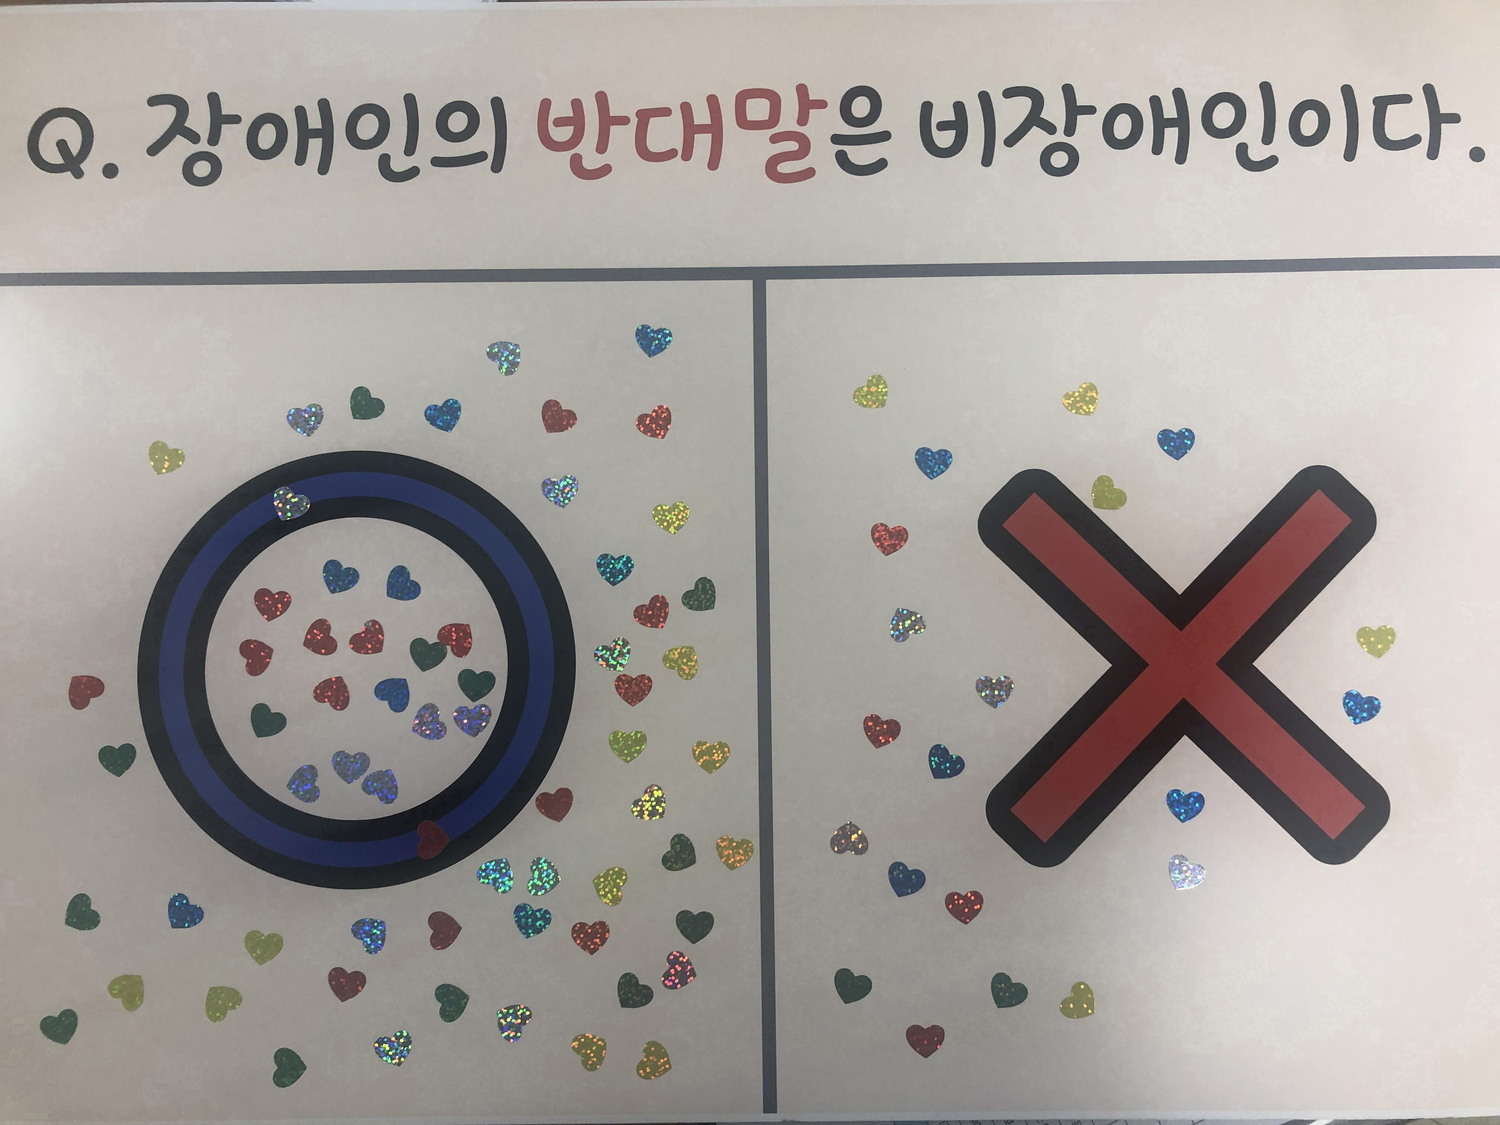 2021금정복지박람회 참여(유, 장애인식개선OX 